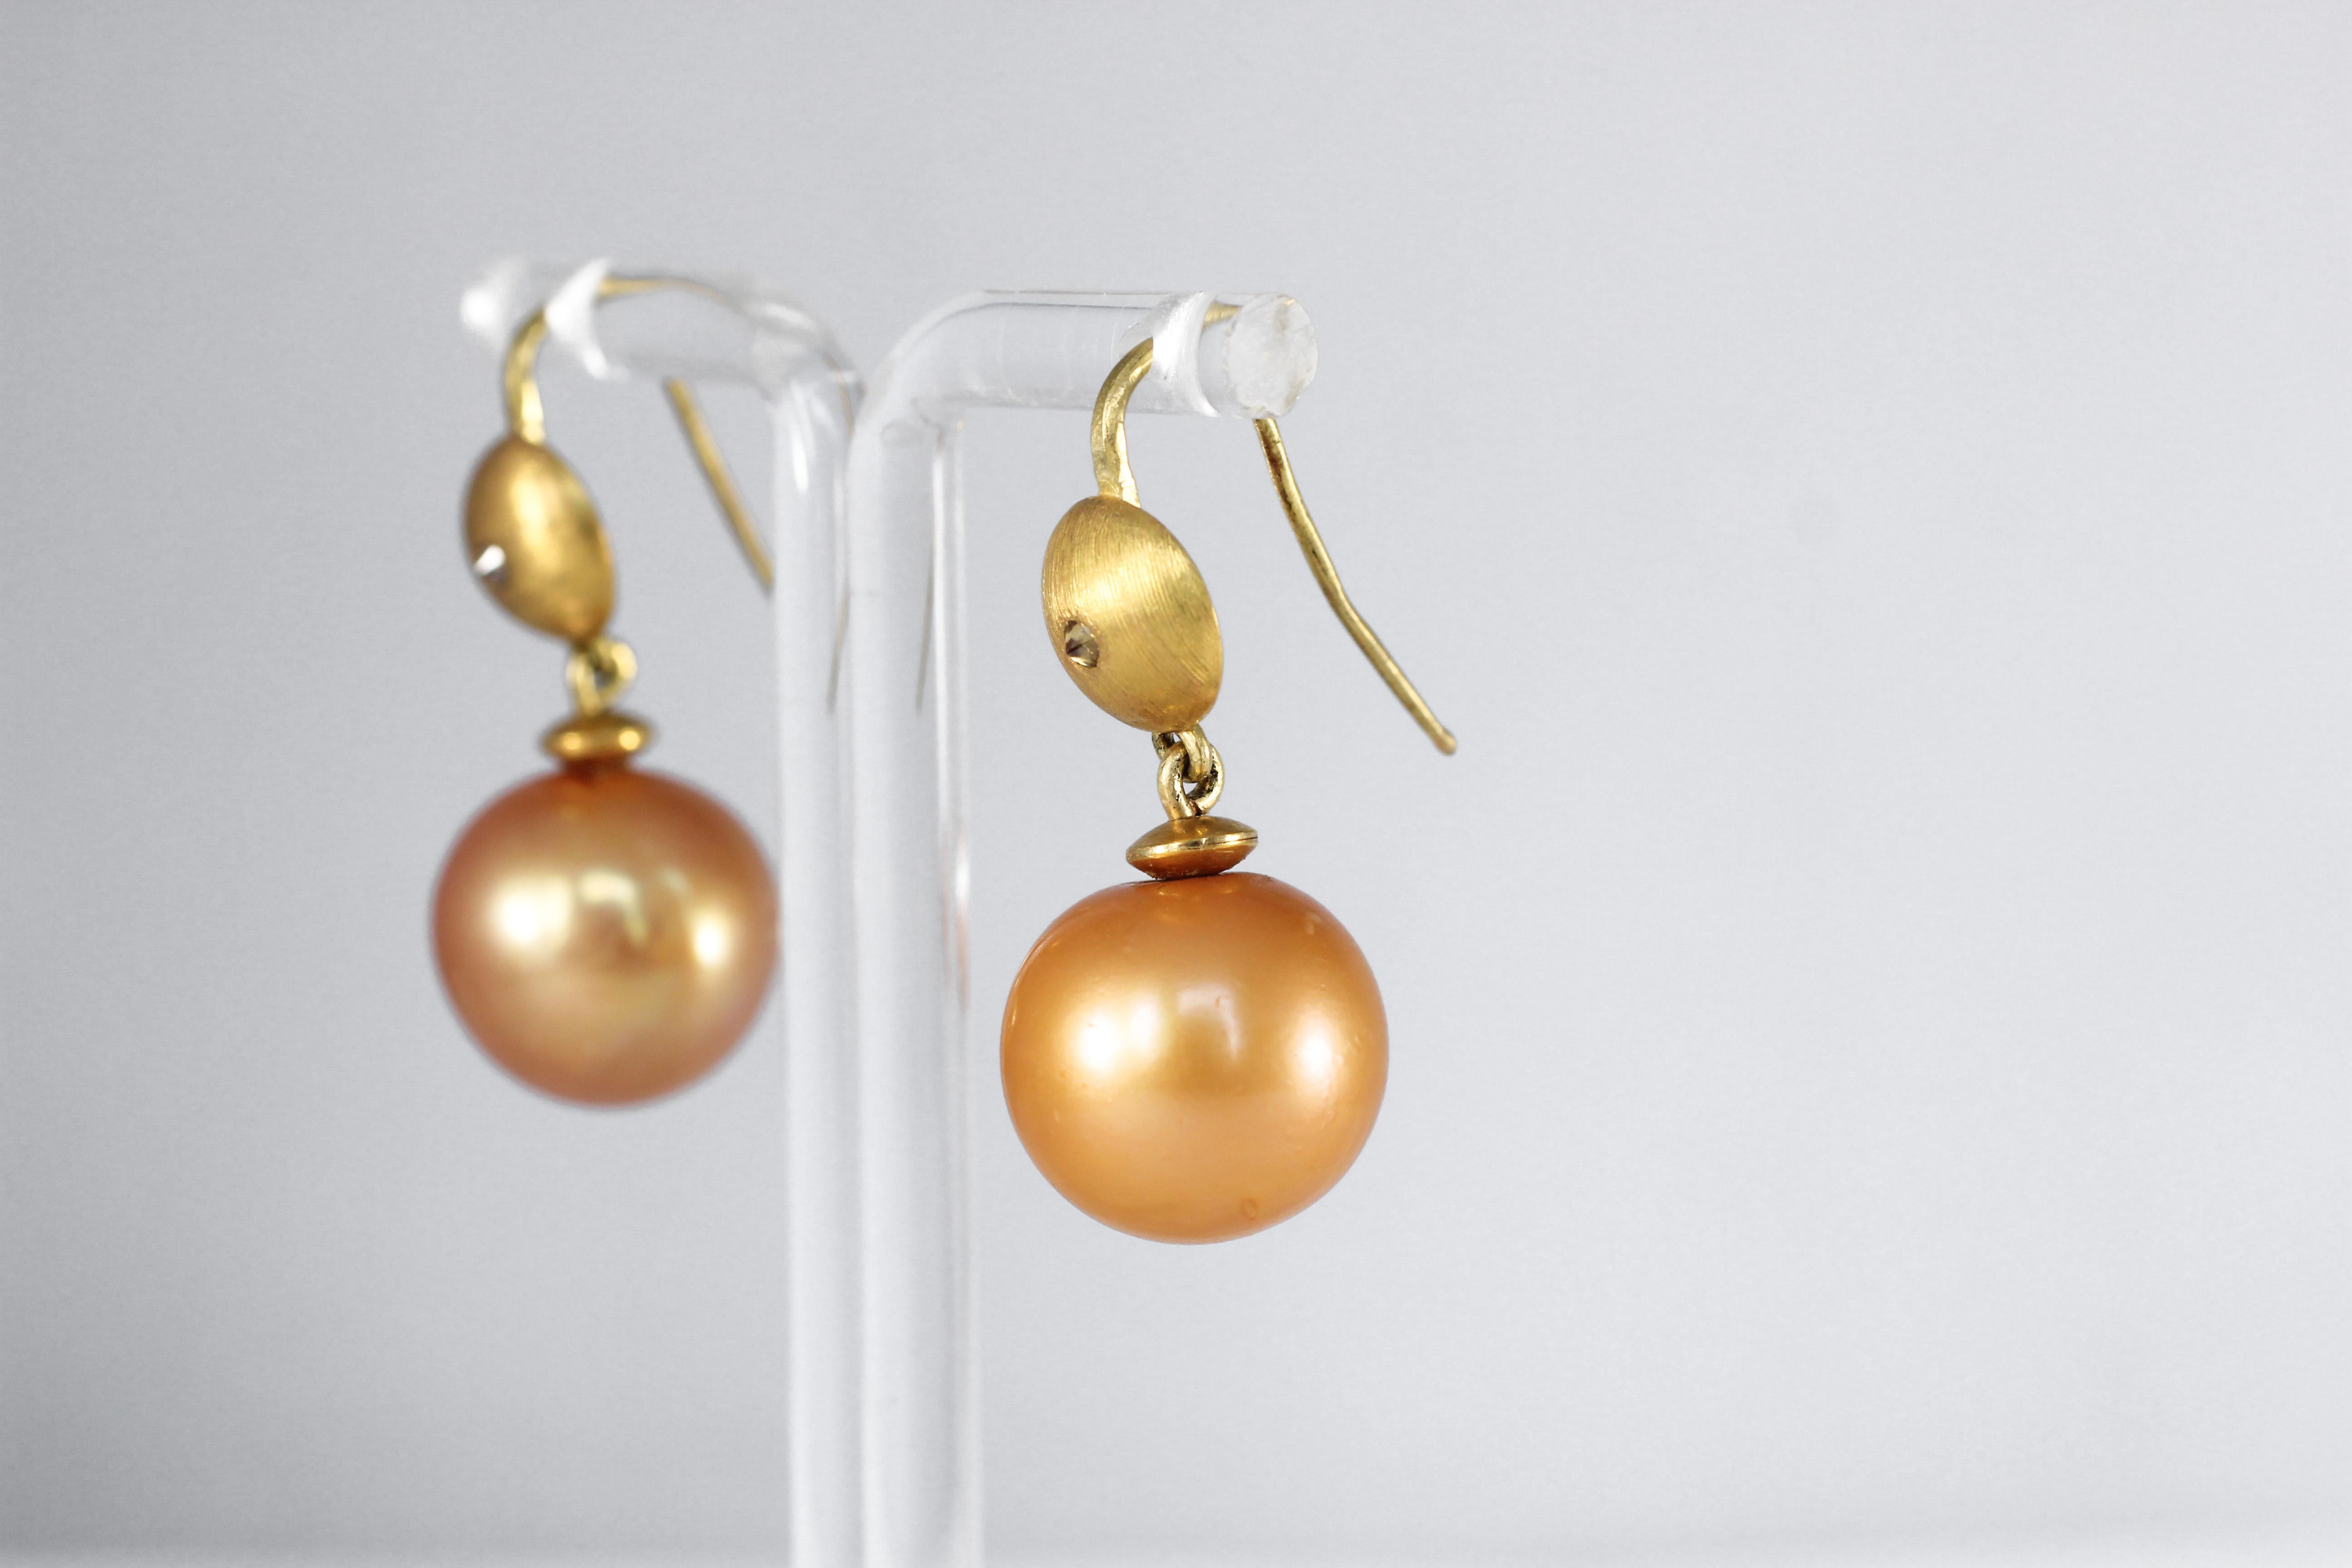 Benutzerdefinierte Bestellung. Goldene Eve-Tropfen-Ohrringe. Diese eleganten, zeitgenössischen Ohrringe aus 21-karätigem Gold sind die Neuauflage eines Klassikers aller Zeiten. Benutzerdefinierter Eintrag. Das Wunder der Natur, eine große, 15 mm